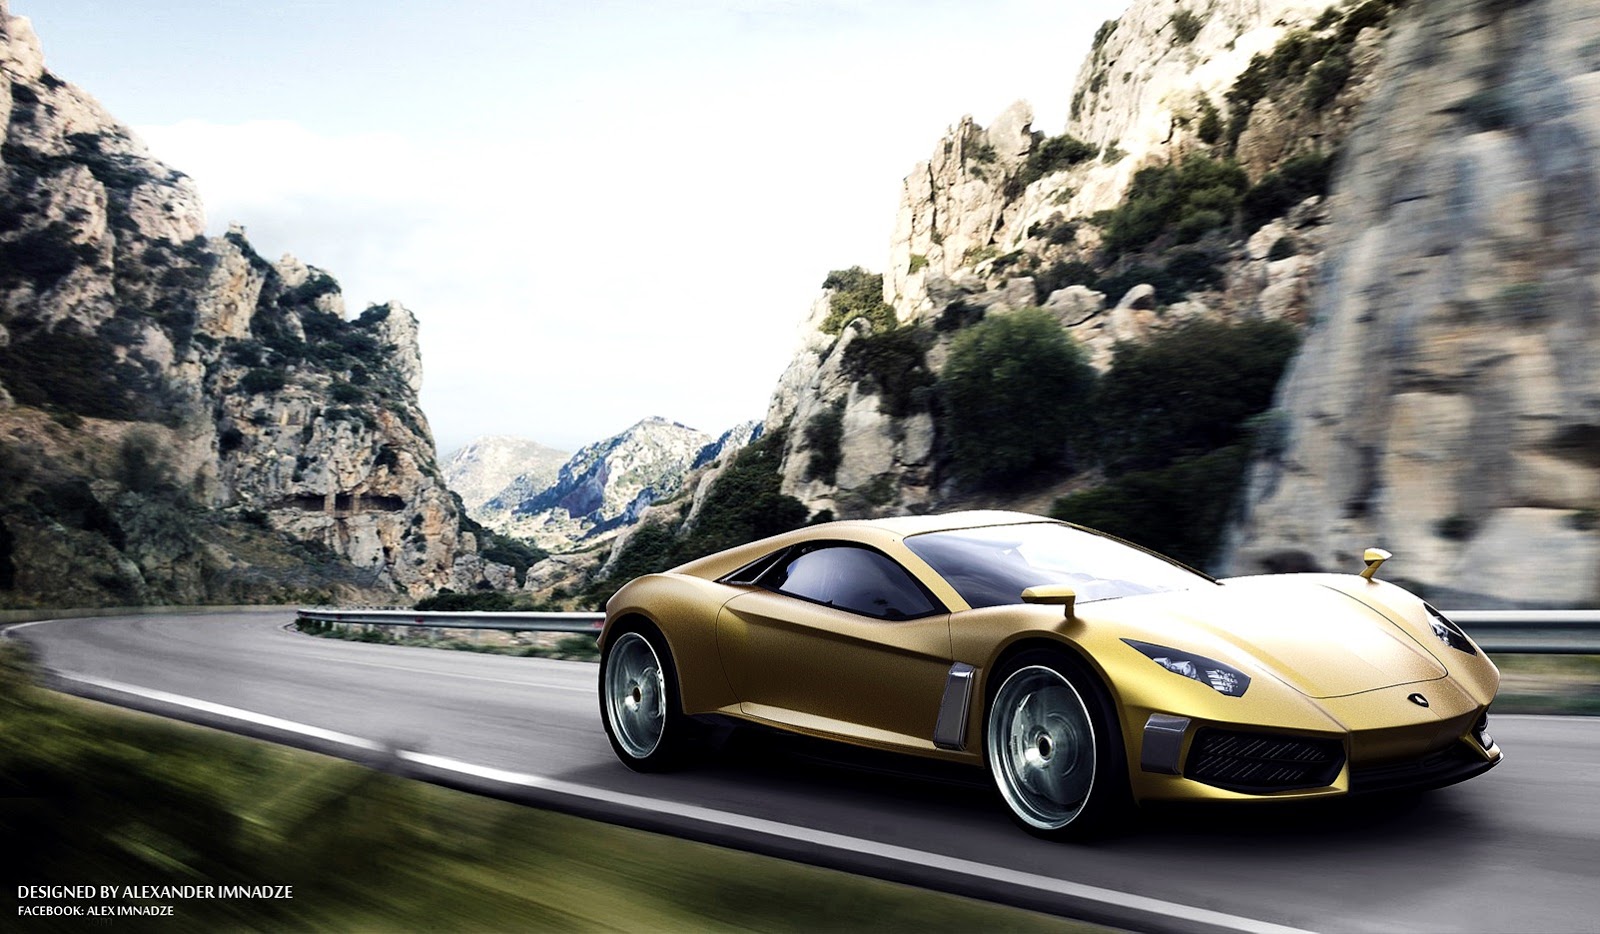 Lamborghini Resonare Concept Super Car http://lh6.ggpht.com/-VJwta2eD_8U/UL_dMR_t-aI/AAAAAAAKh-U/pI7CiCr4qPs/s1600/Lamborghini-Supercar-Concept-1%25255B4%25255D.jpg